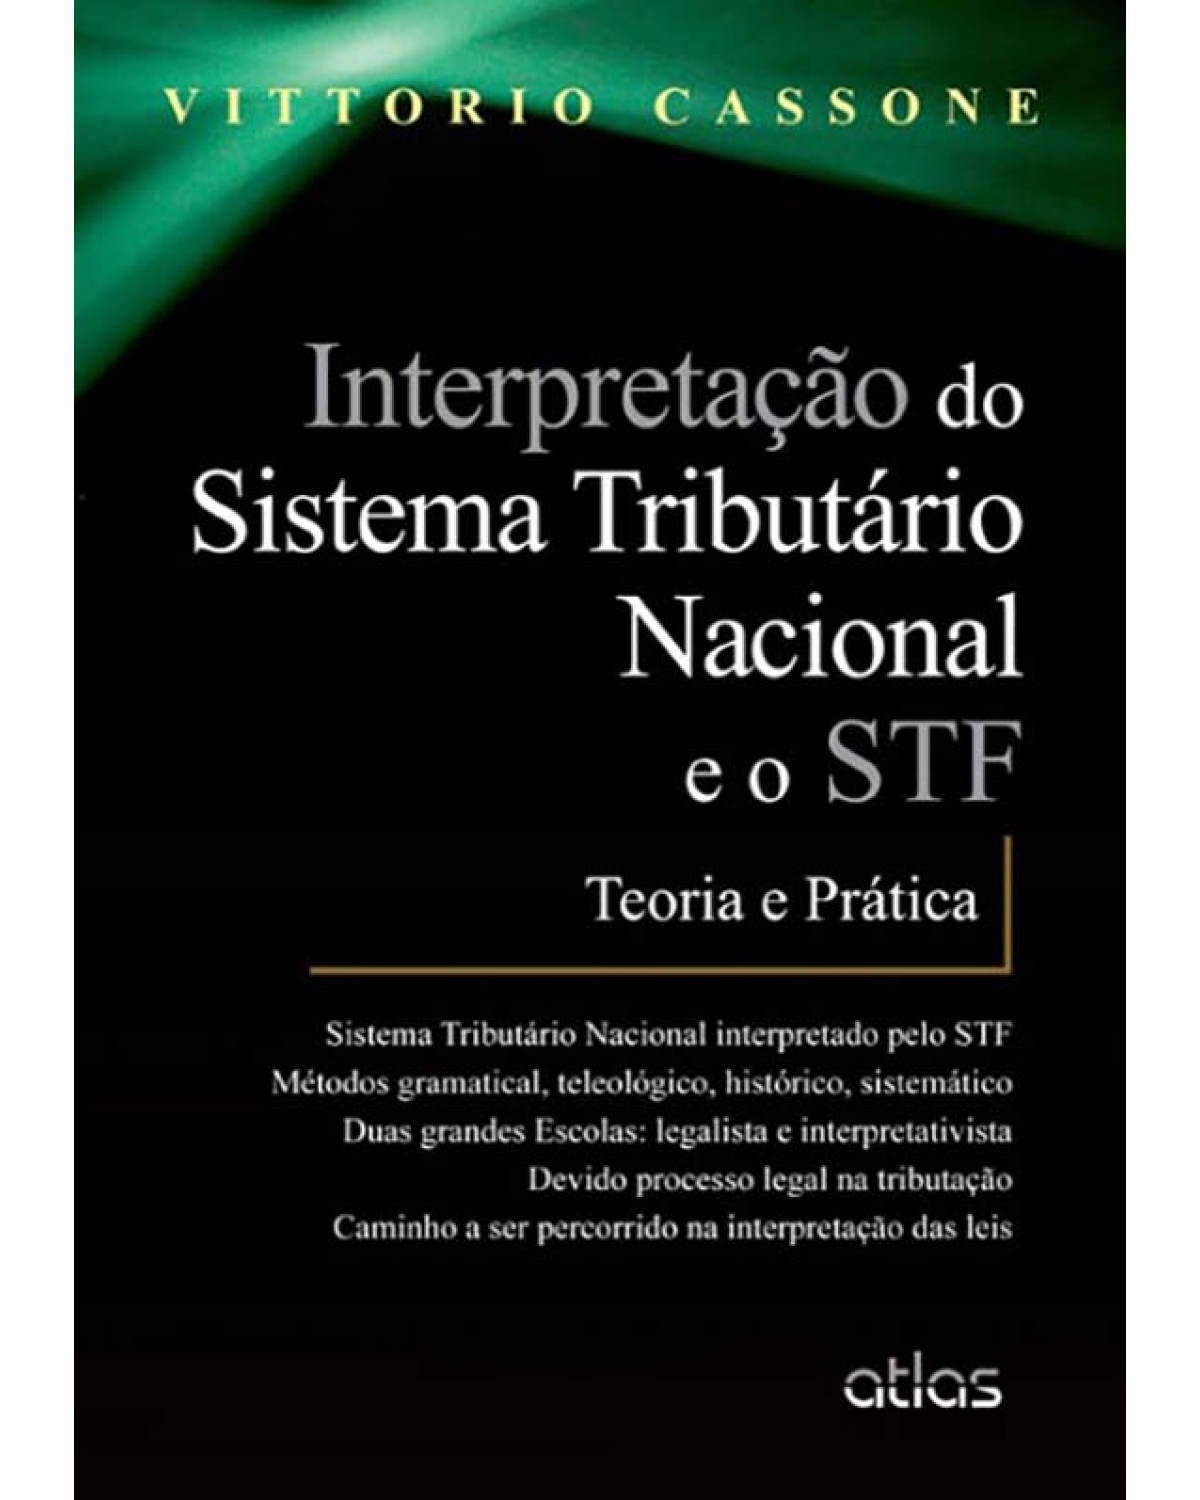 Interpretação do sistema tributário nacional e o STF - Teoria e prática - 1ª Edição | 2013